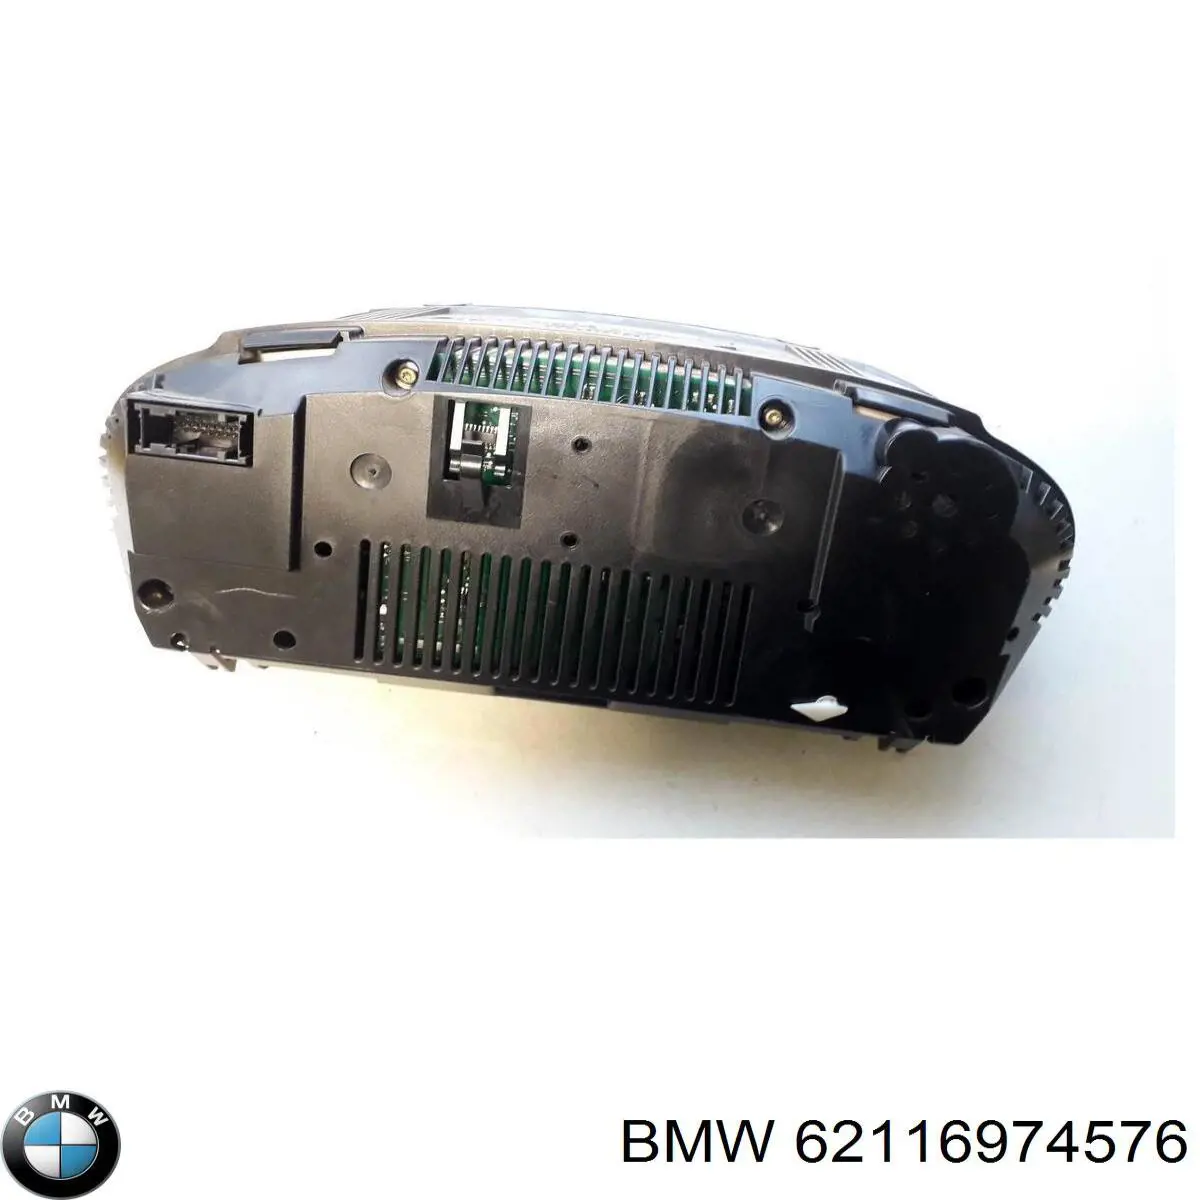 62109168864 BMW tablero de instrumentos (panel de instrumentos)